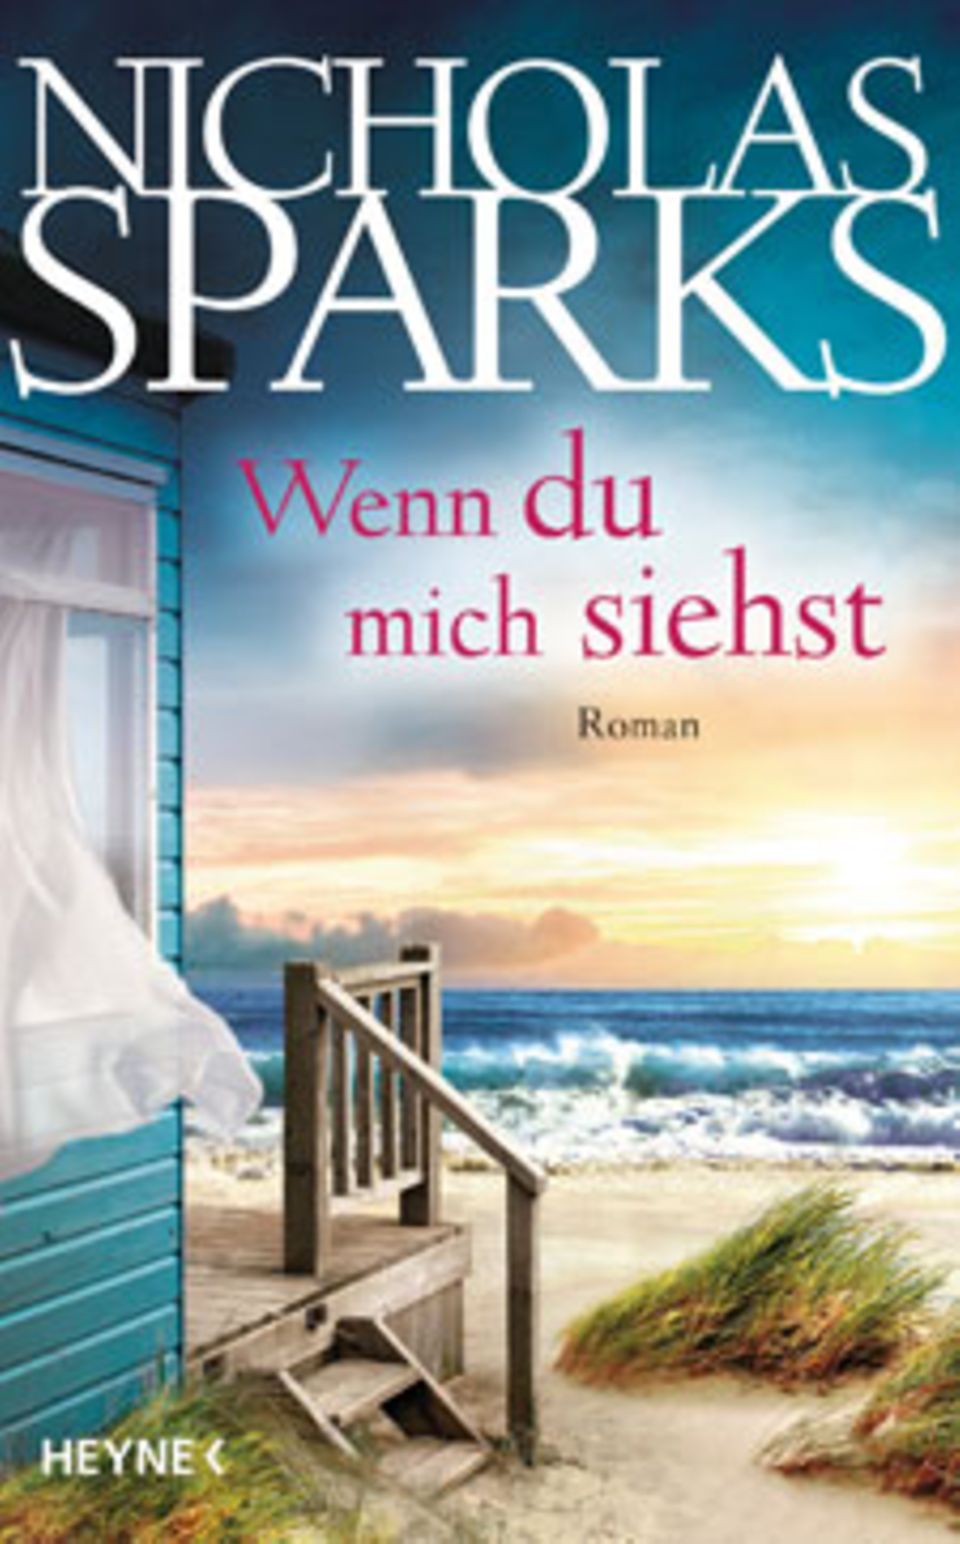 Nicholas Sparks: Das ist sein neuer Roman "Wenn du mich siehst"